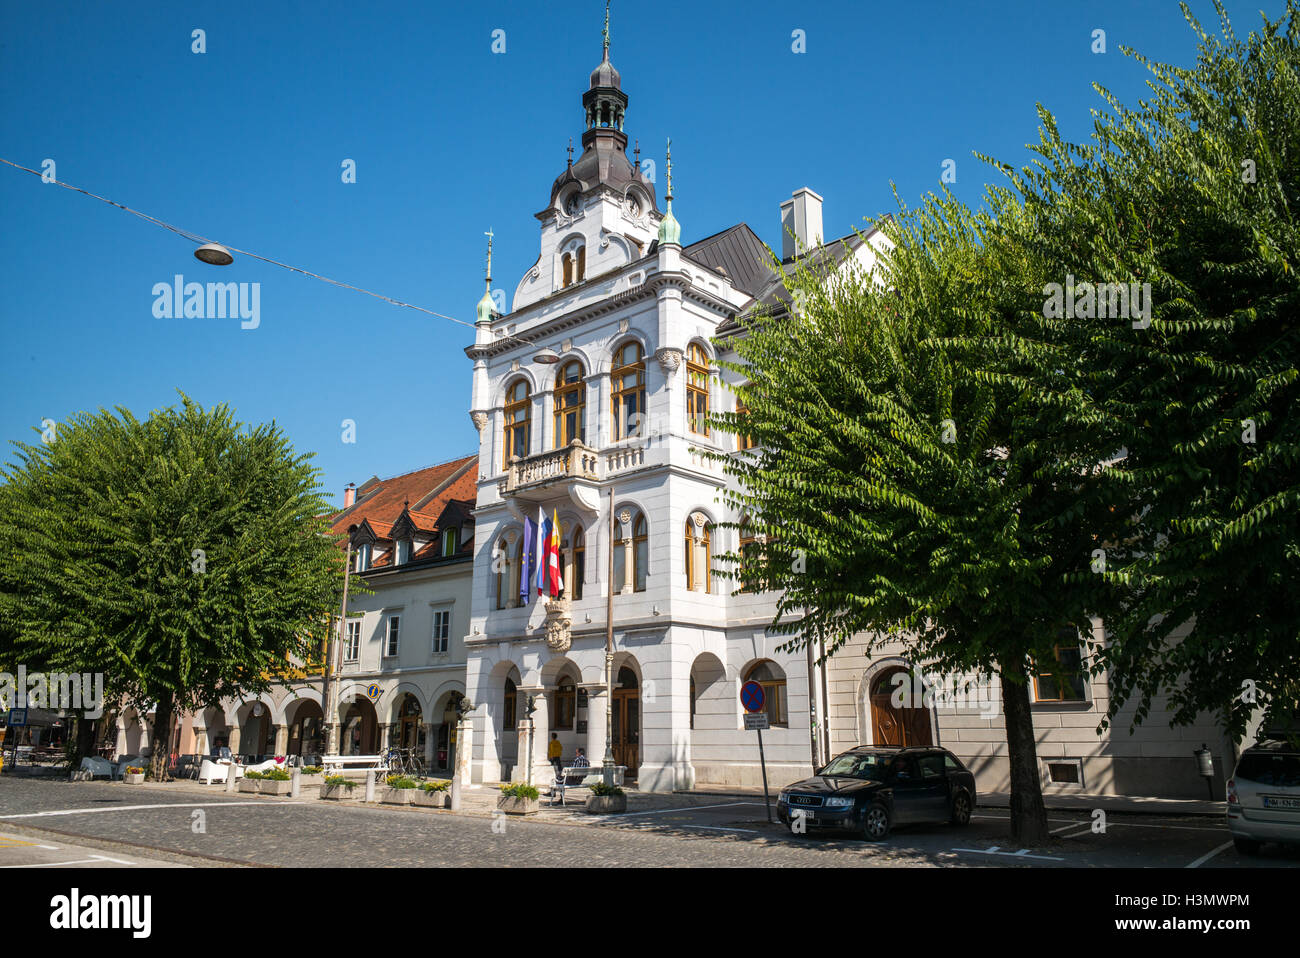 Novo Mesto town hall, Slovenia Stock Photo